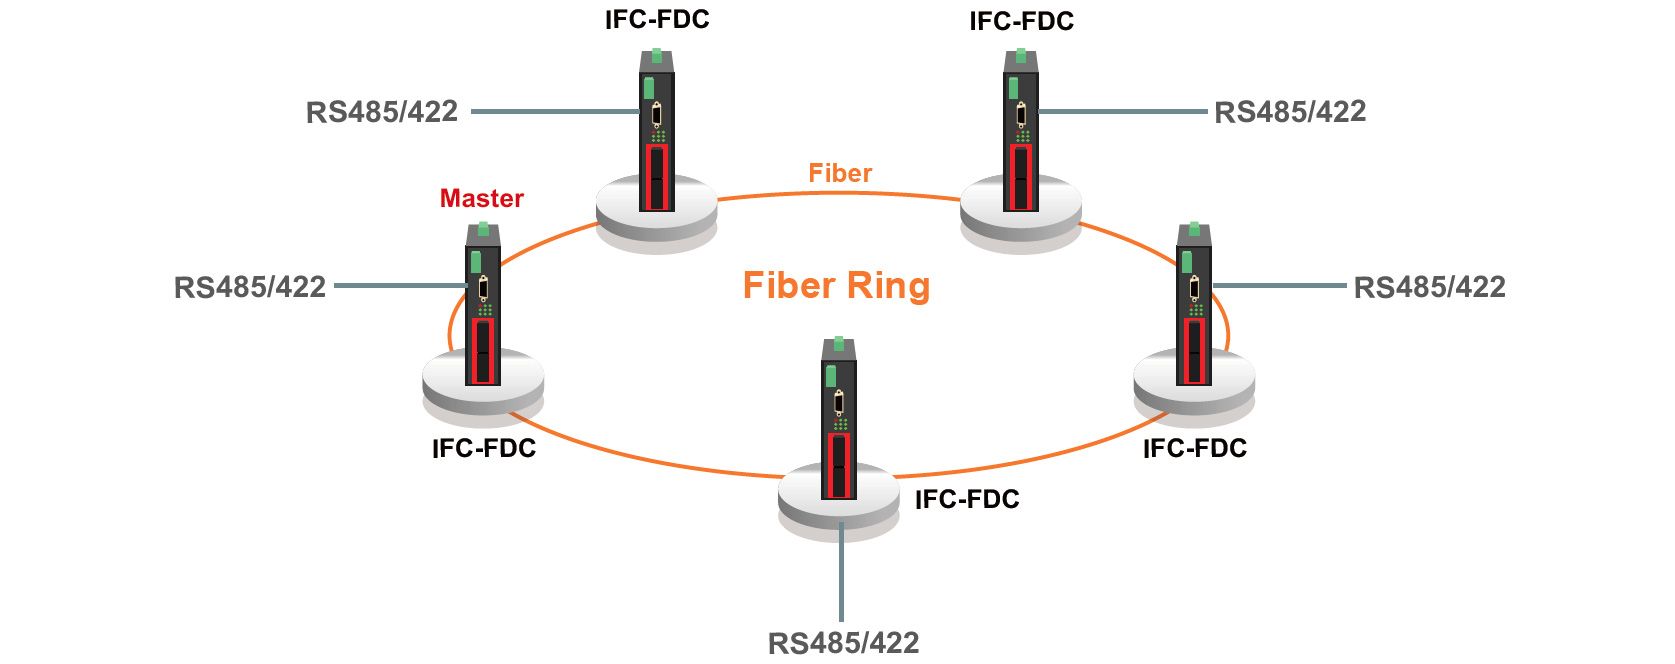 Topología y aplicación de redundancia de anillo de fibra IFC-FDC